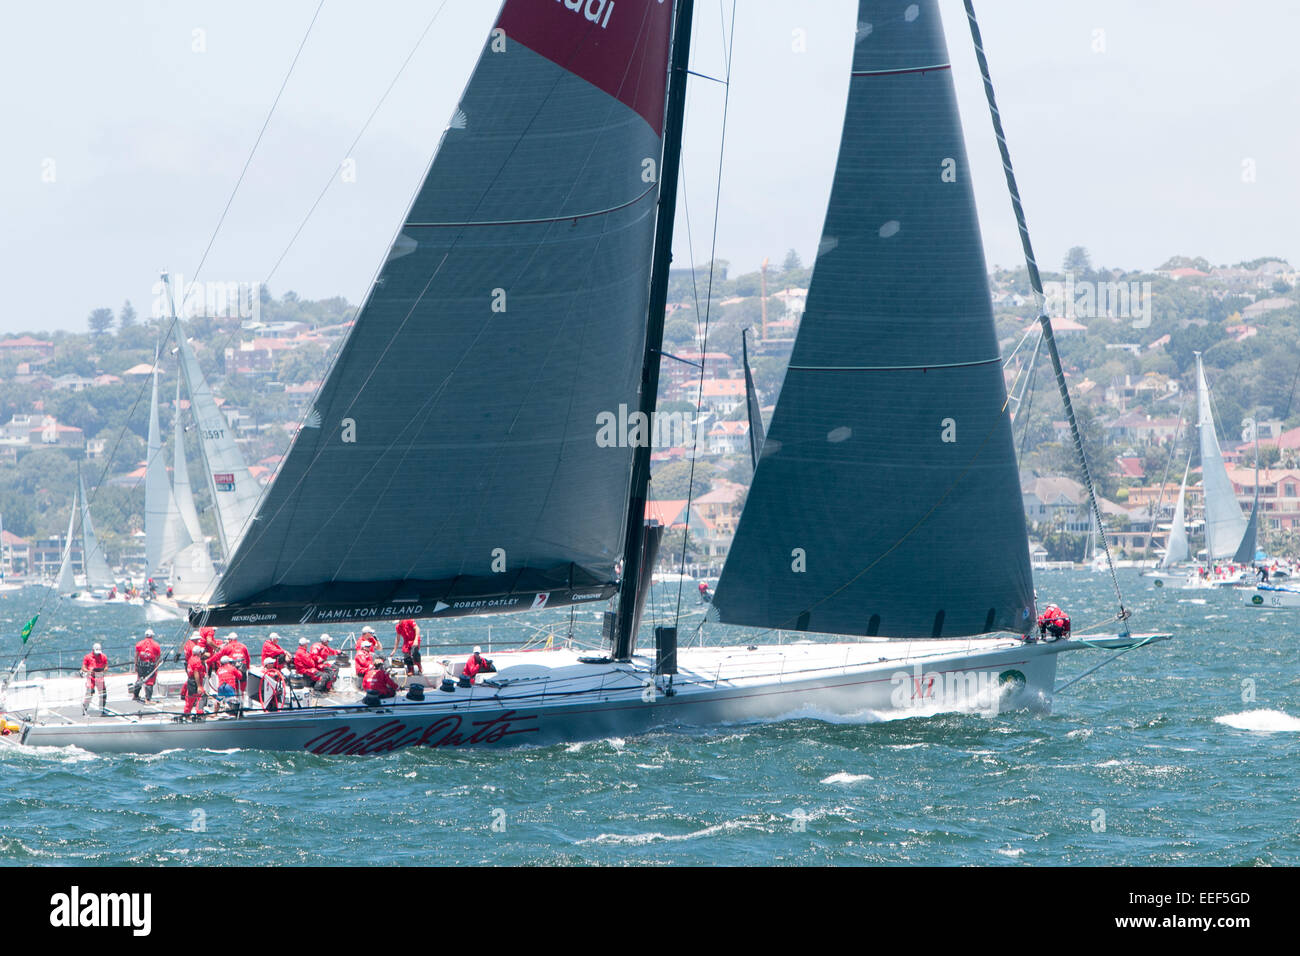 L'avoine sauvage x1 au début de la 2014 rolex sydney to hobart yacht race le lendemain de Noël 2014, le port de Sydney, Australie Banque D'Images